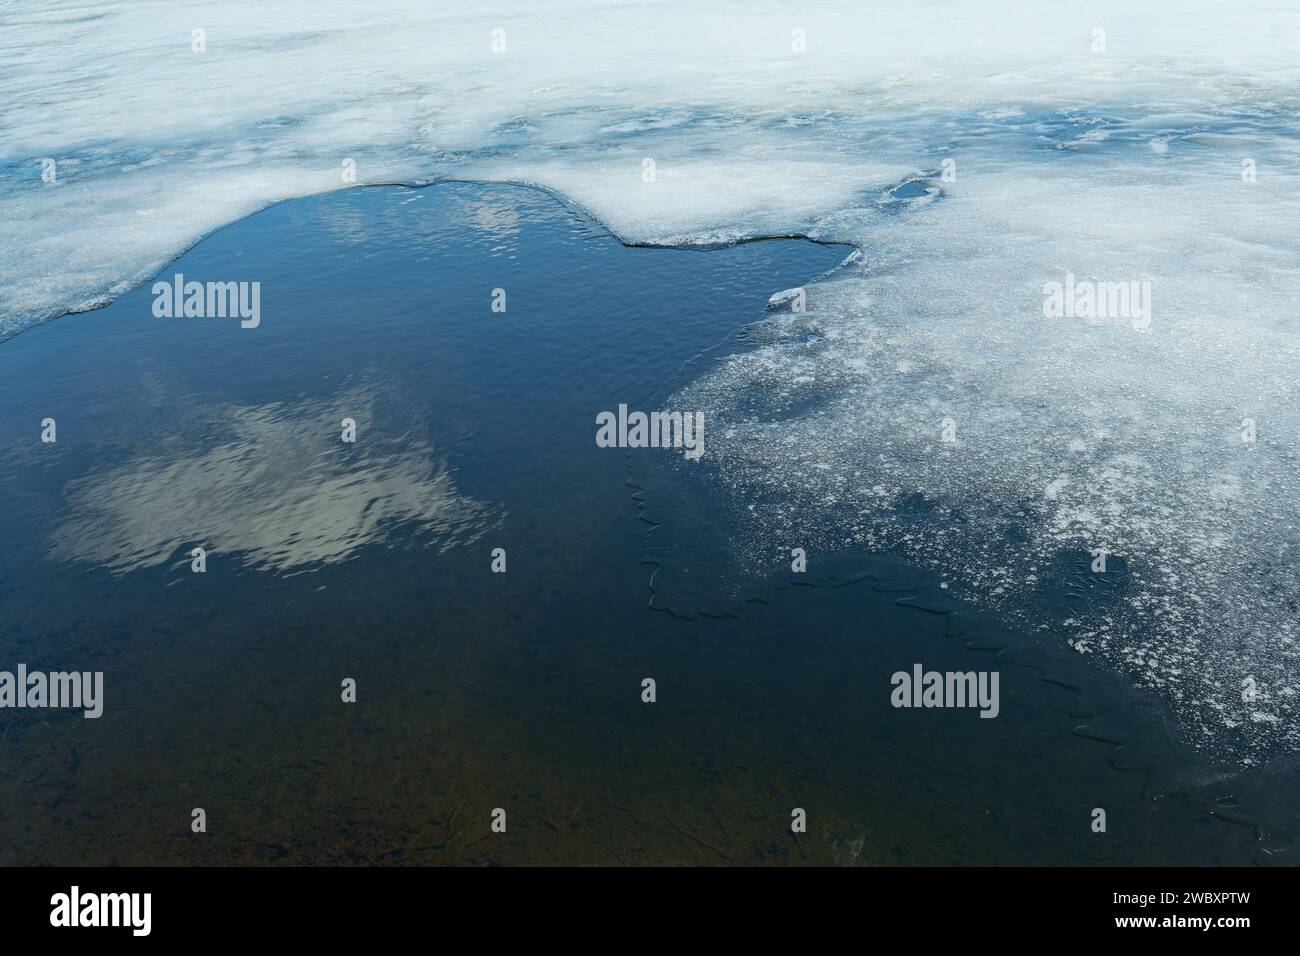 Uno strato di ghiaccio copre la superficie di uno stagno che circonda una nuvola riflessa. Foto Stock